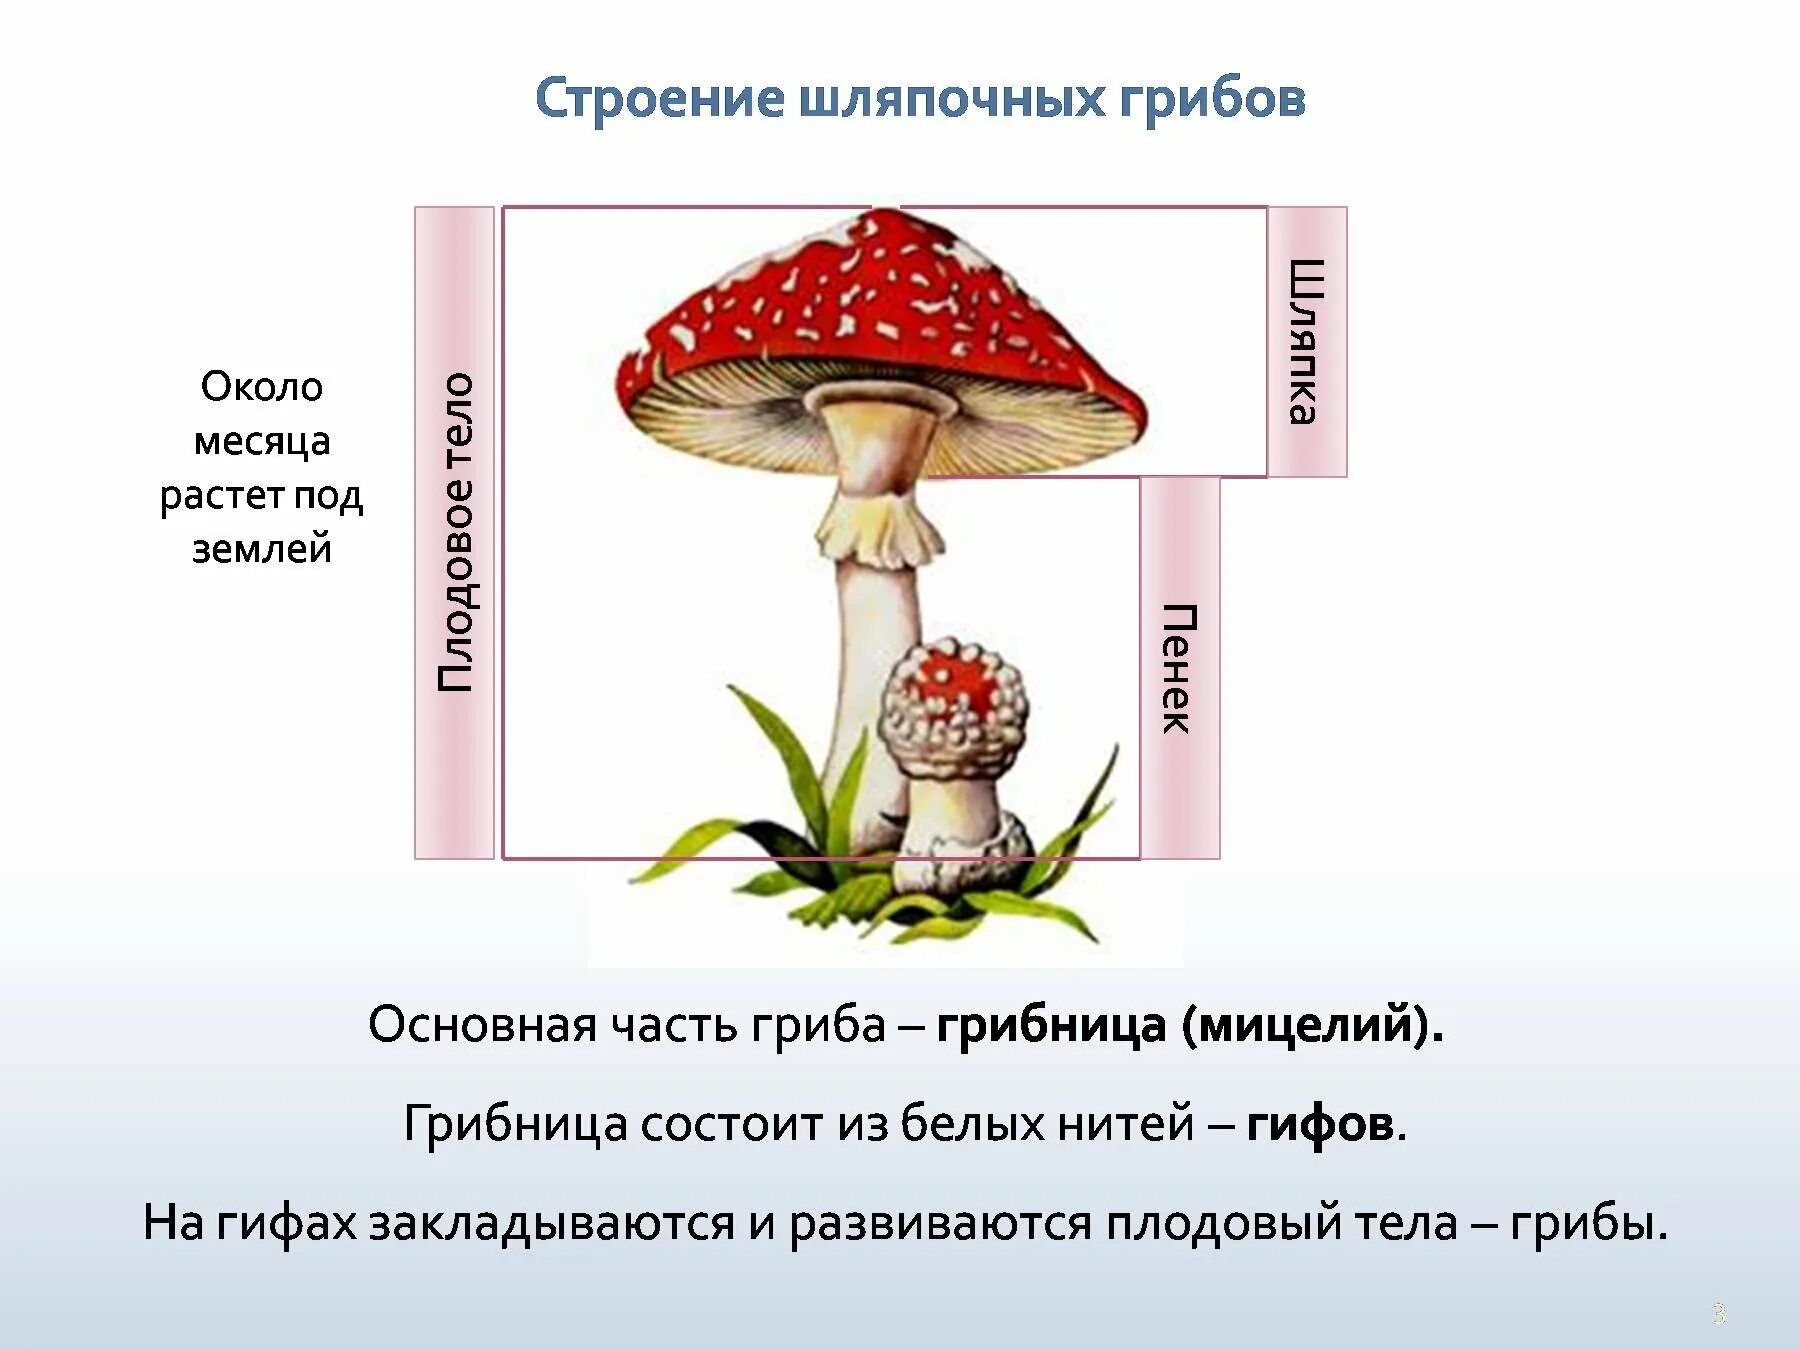 Главная часть любого гриба. Грибы строение шляпочных грибов. Строение мухомора грибница гриба. Строение шляпочного гриба мухомора. Строение шляпочного гриба 5.